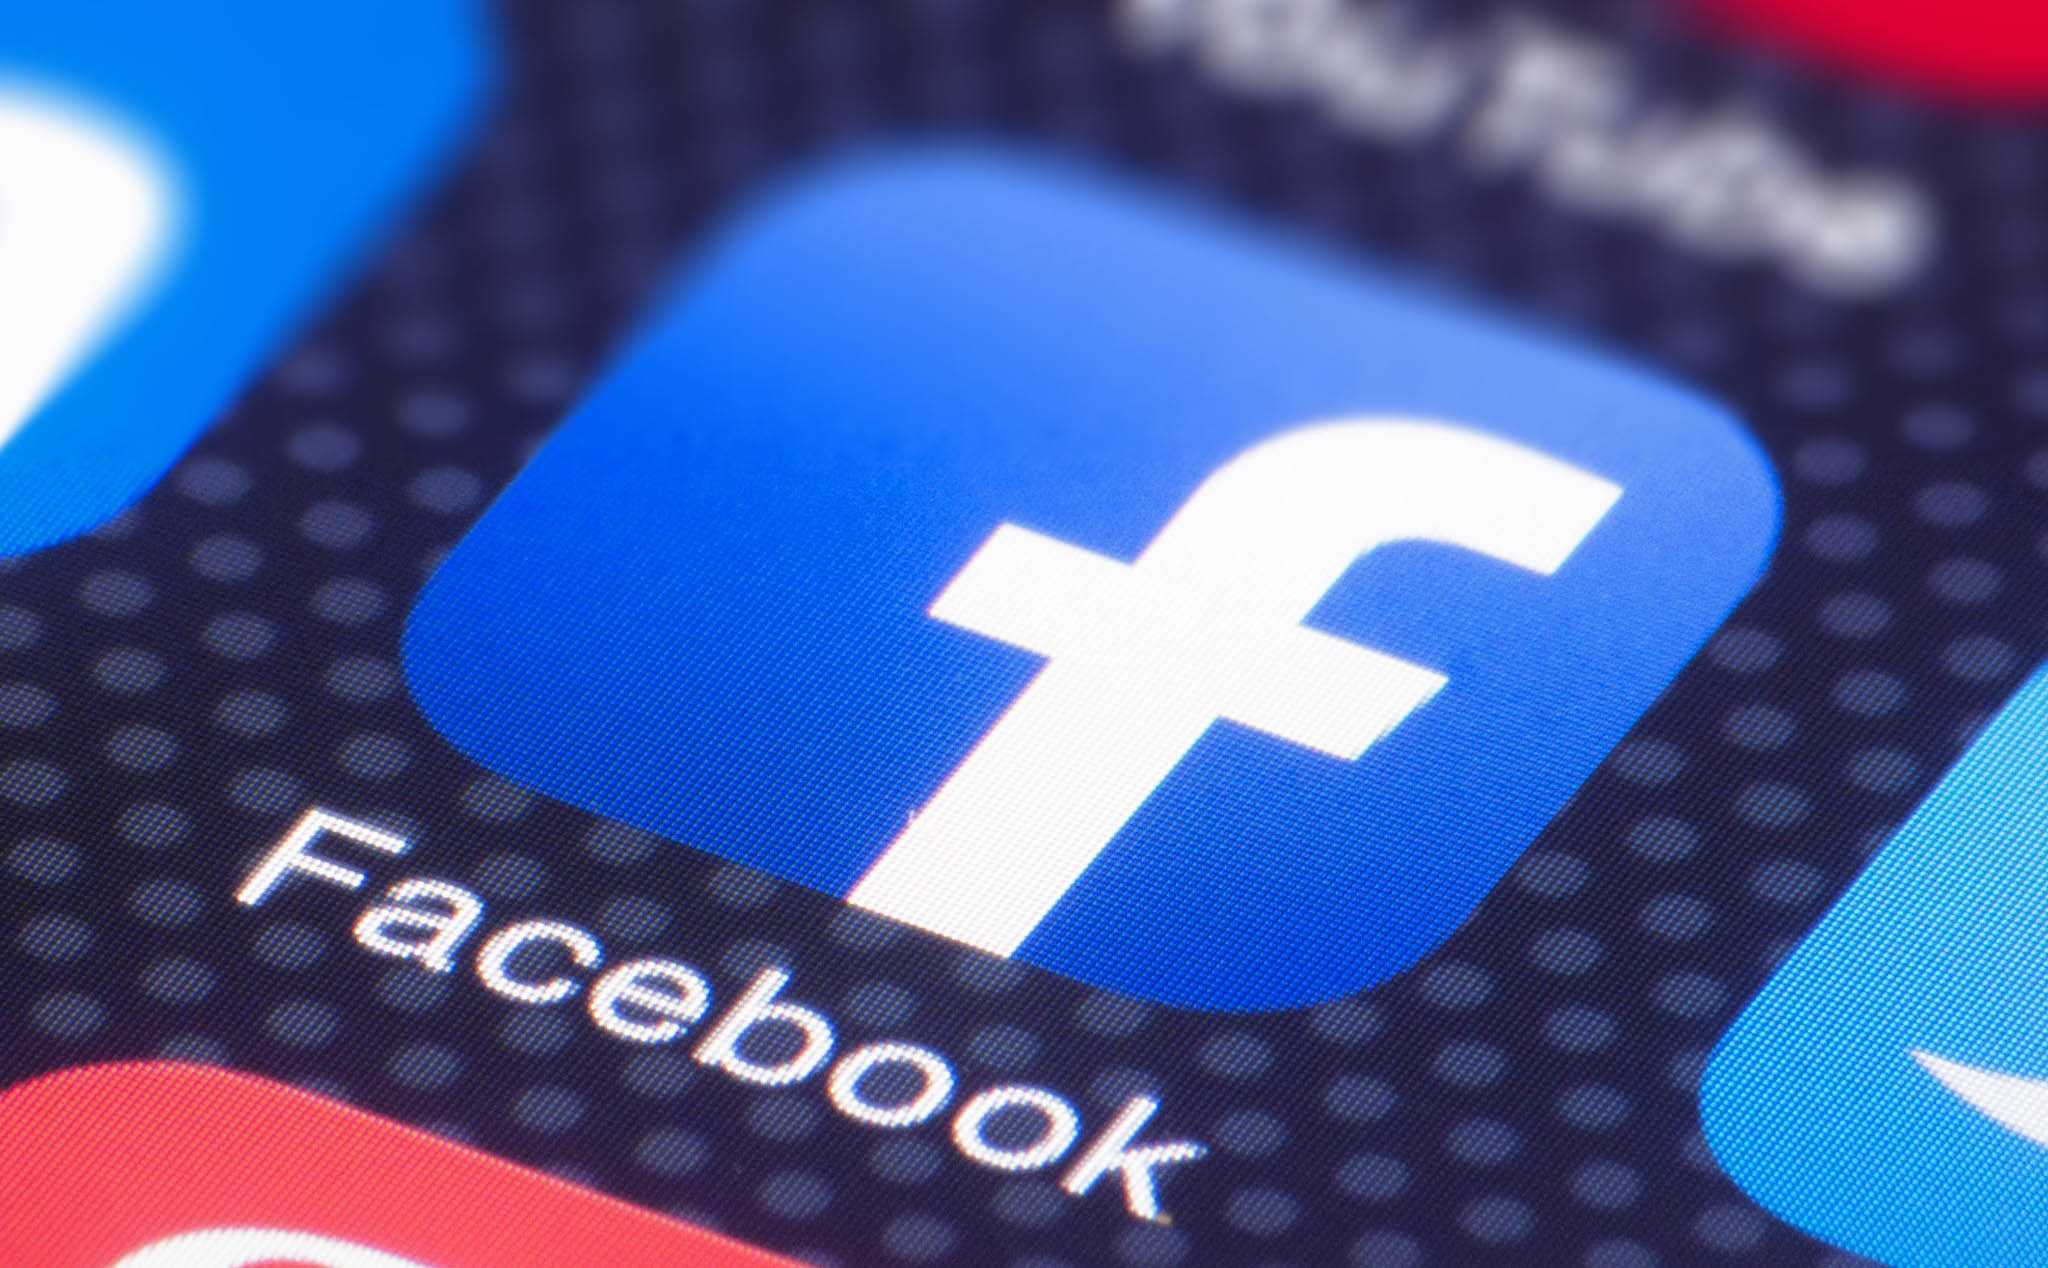 Centra: Công cụ theo dõi người dùng đáng sợ của Facebook, không một ai thoát được?